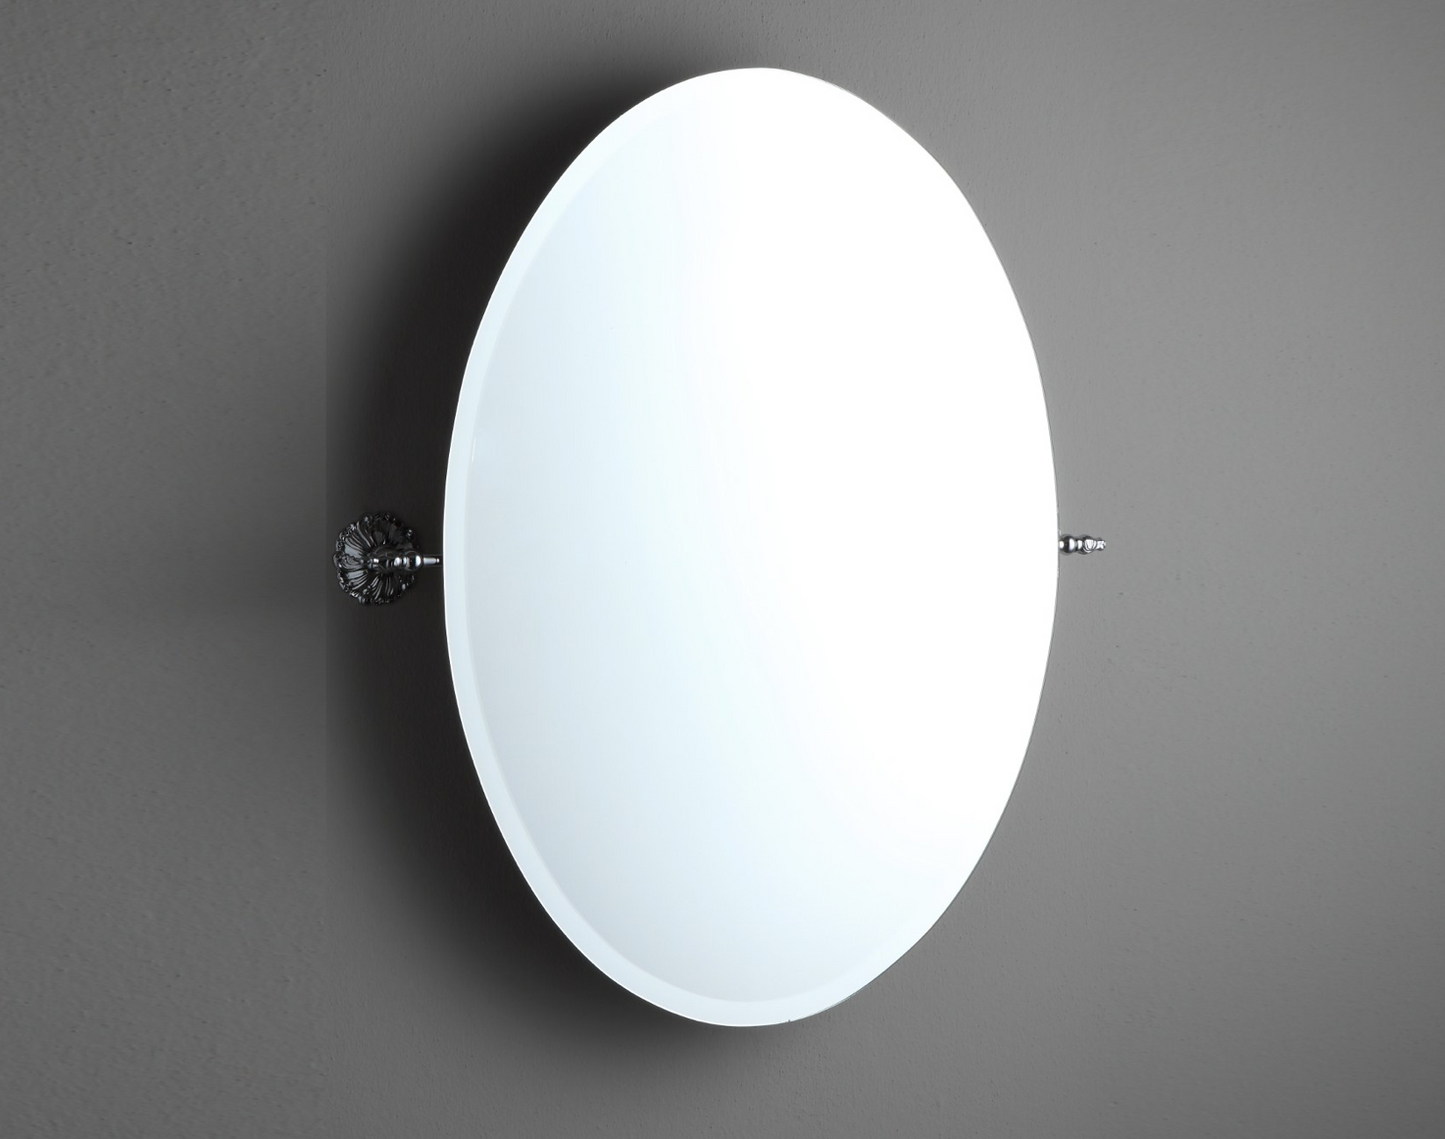 Espejo de baño ovalado basculante estilo Clásico